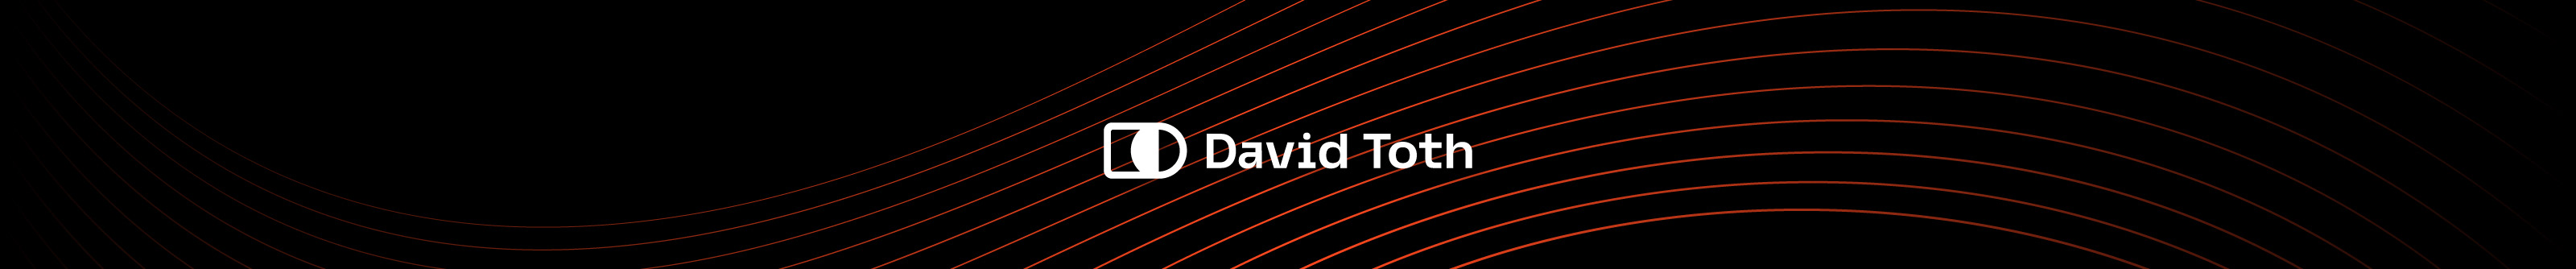 Dávid Tóth's profile banner